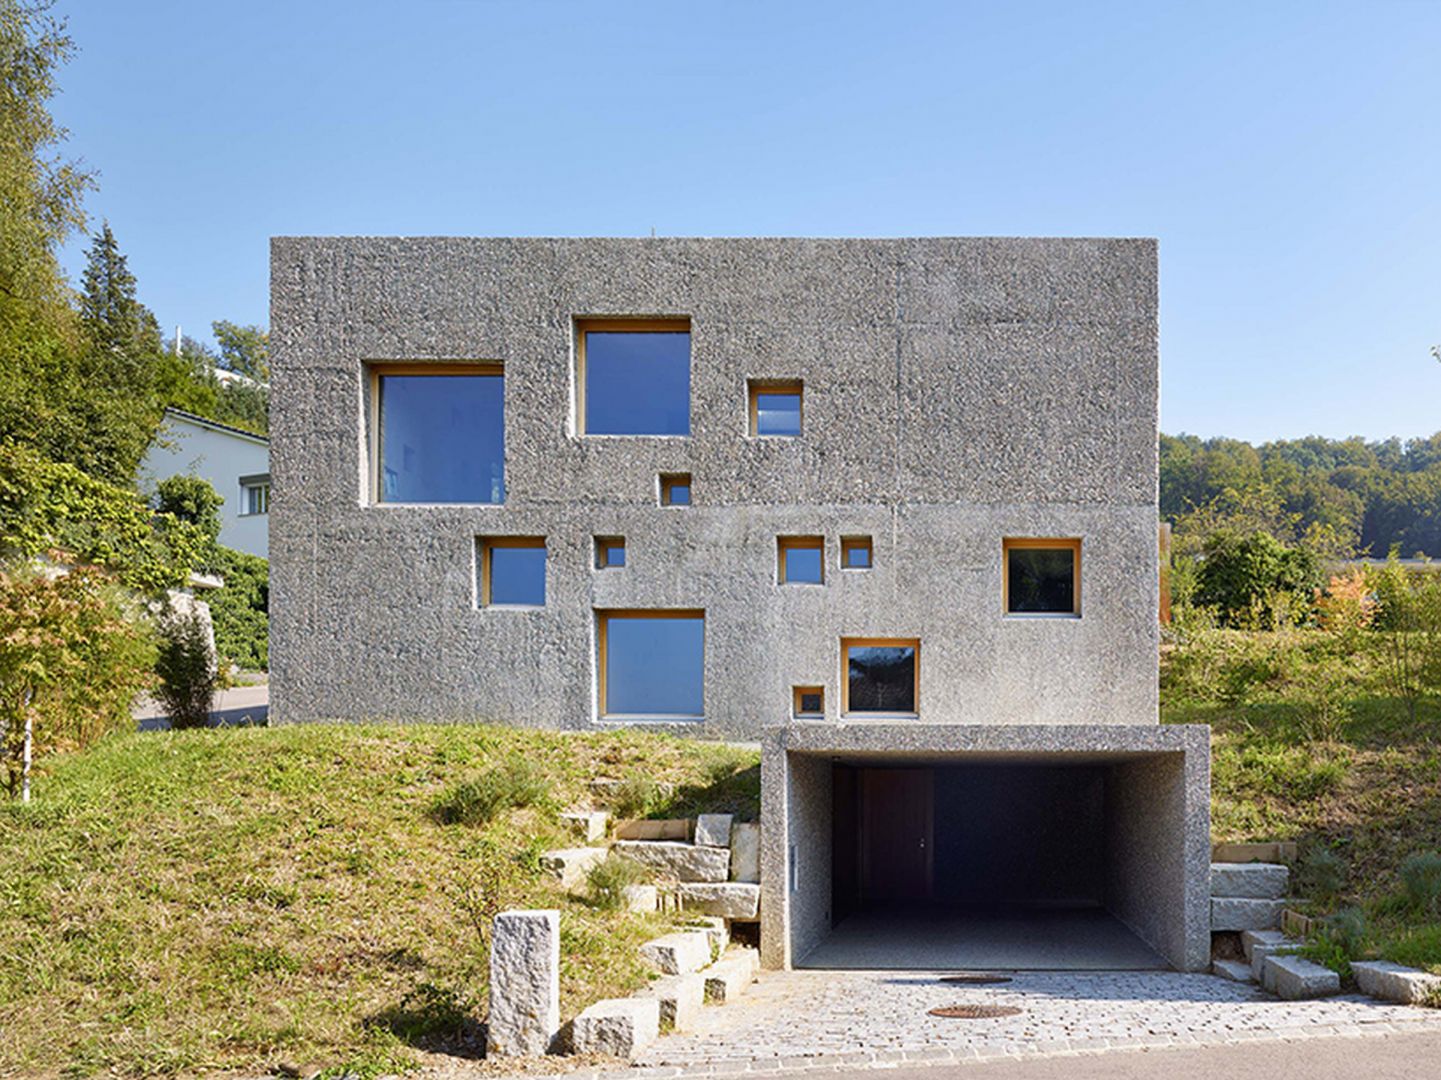 Ta betonowa 2-piętrowa „kostka” znajduje się w północnej Szwajcarii w dzielnicy Füllinsdorf. Rezydencja z oryginalną, betonową elewacją, wyróżnia się finezyjnie rozmieszczonymi, małymi i dużymi kwadratowymi oknami. Fot. Hannes Henz